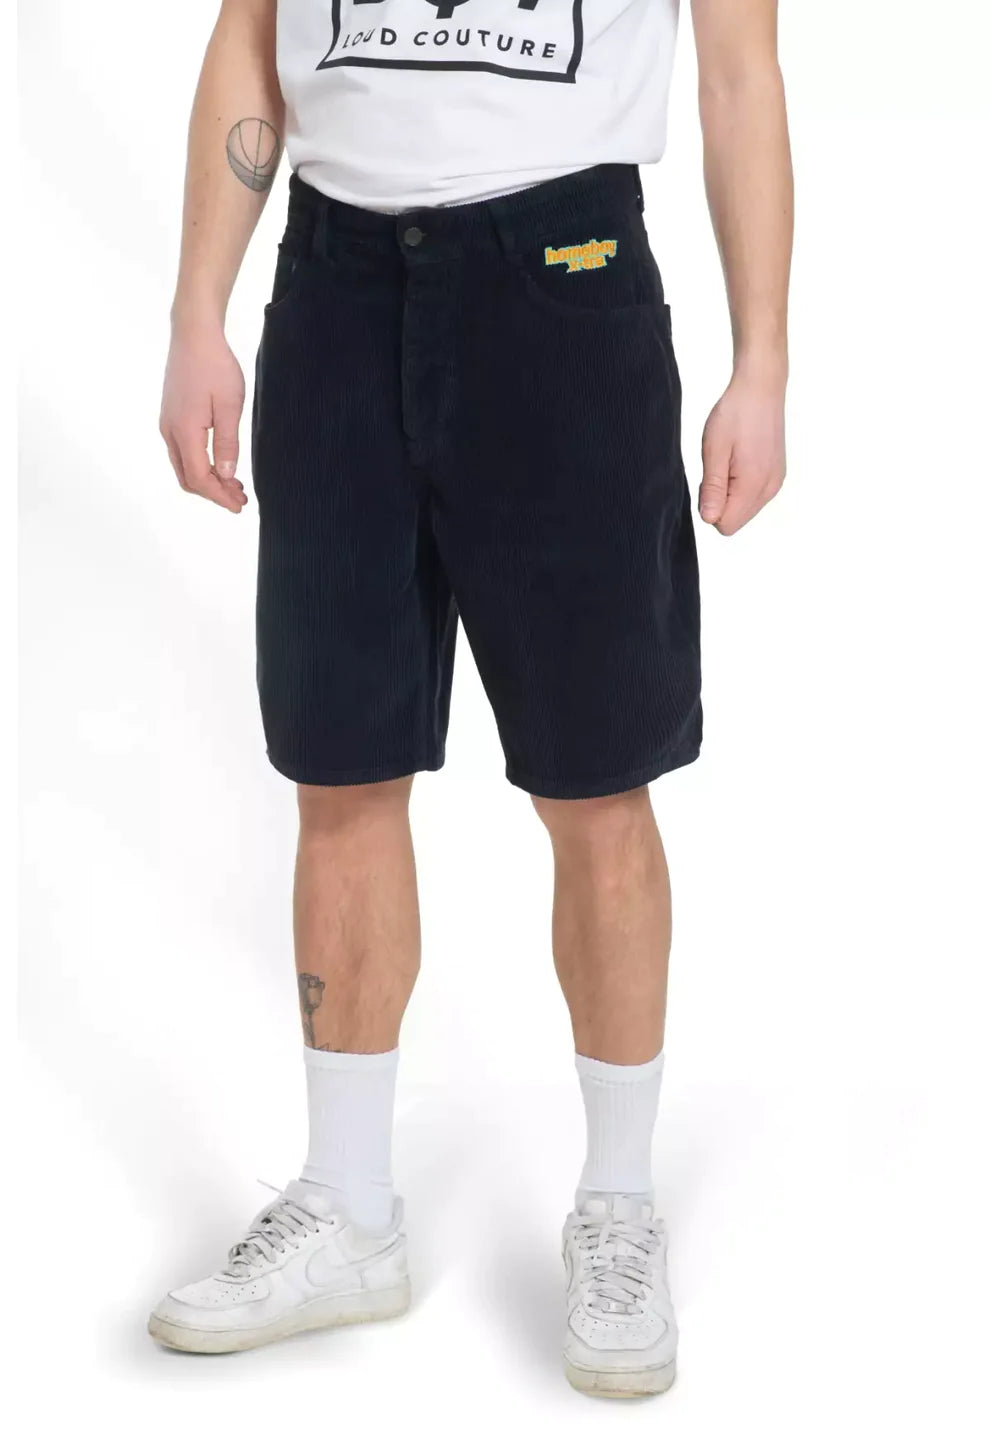 Homeboy Herren-Baggy-Shorts aus schwarzem Samt